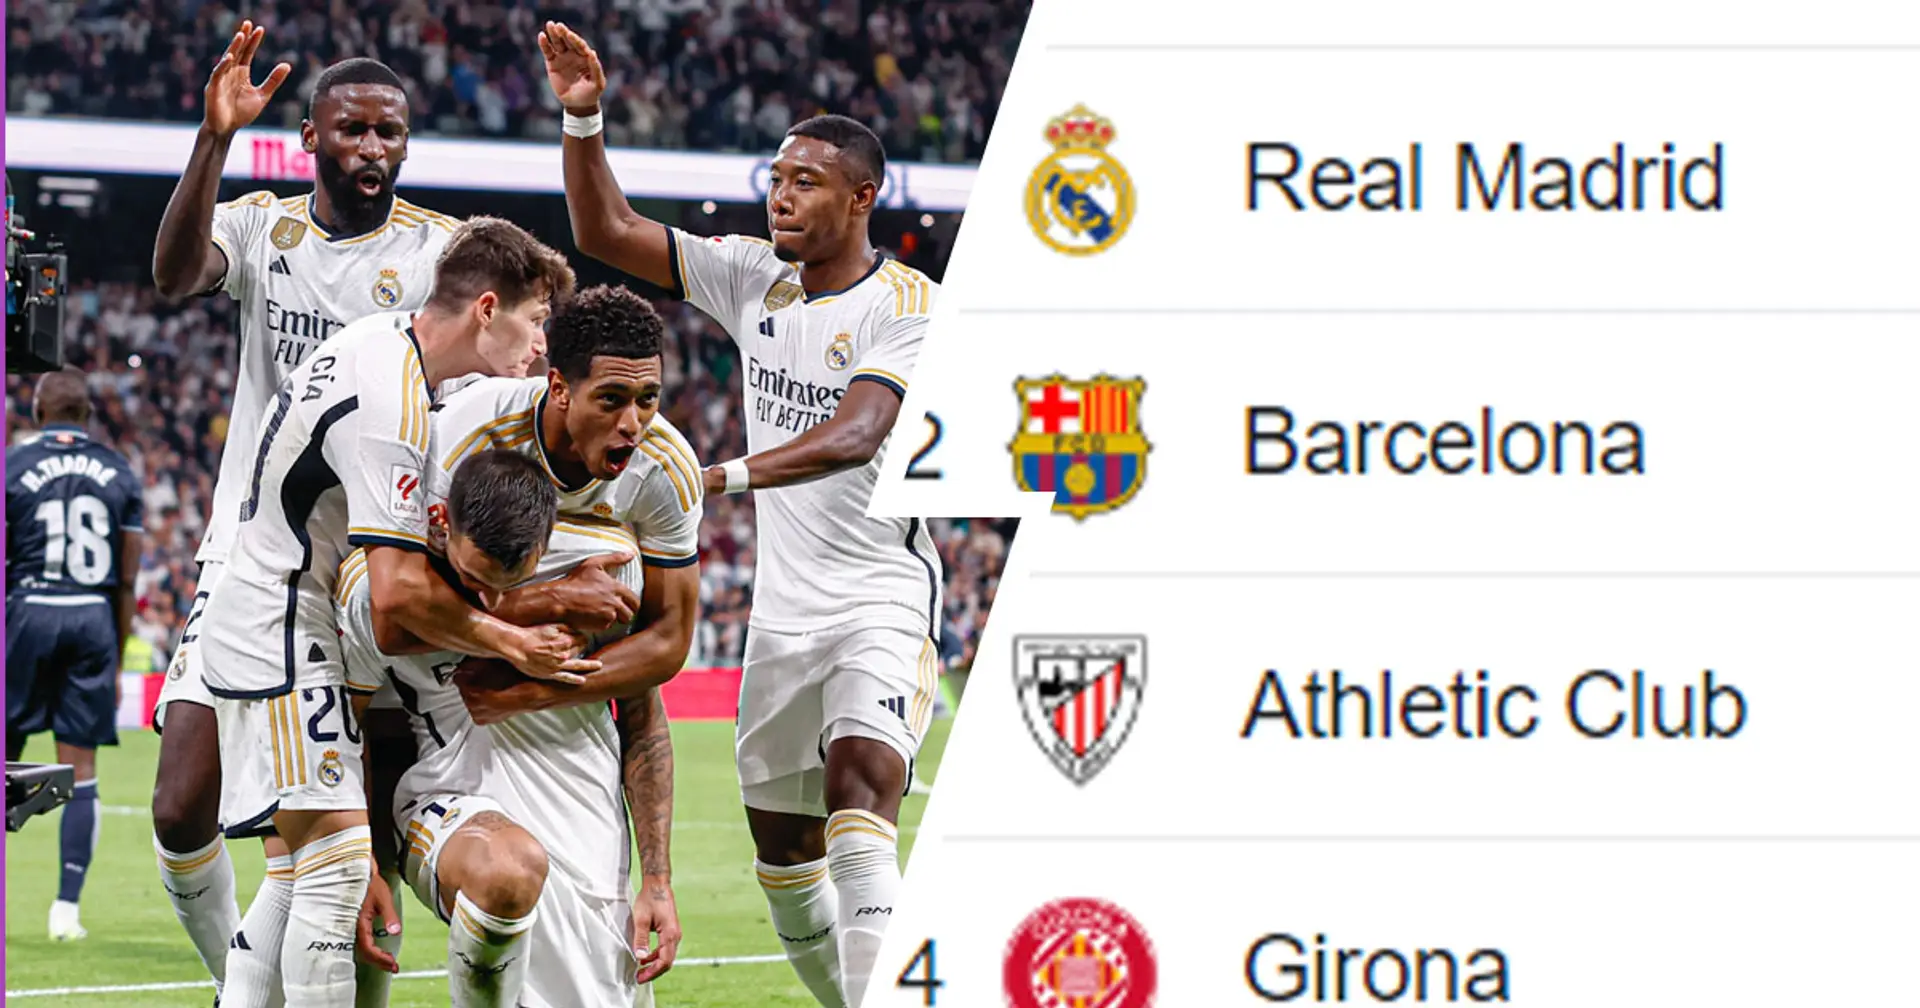 De vuelta a la cima: última clasificación de La Liga tras la emocionante victoria vs Real Sociedad